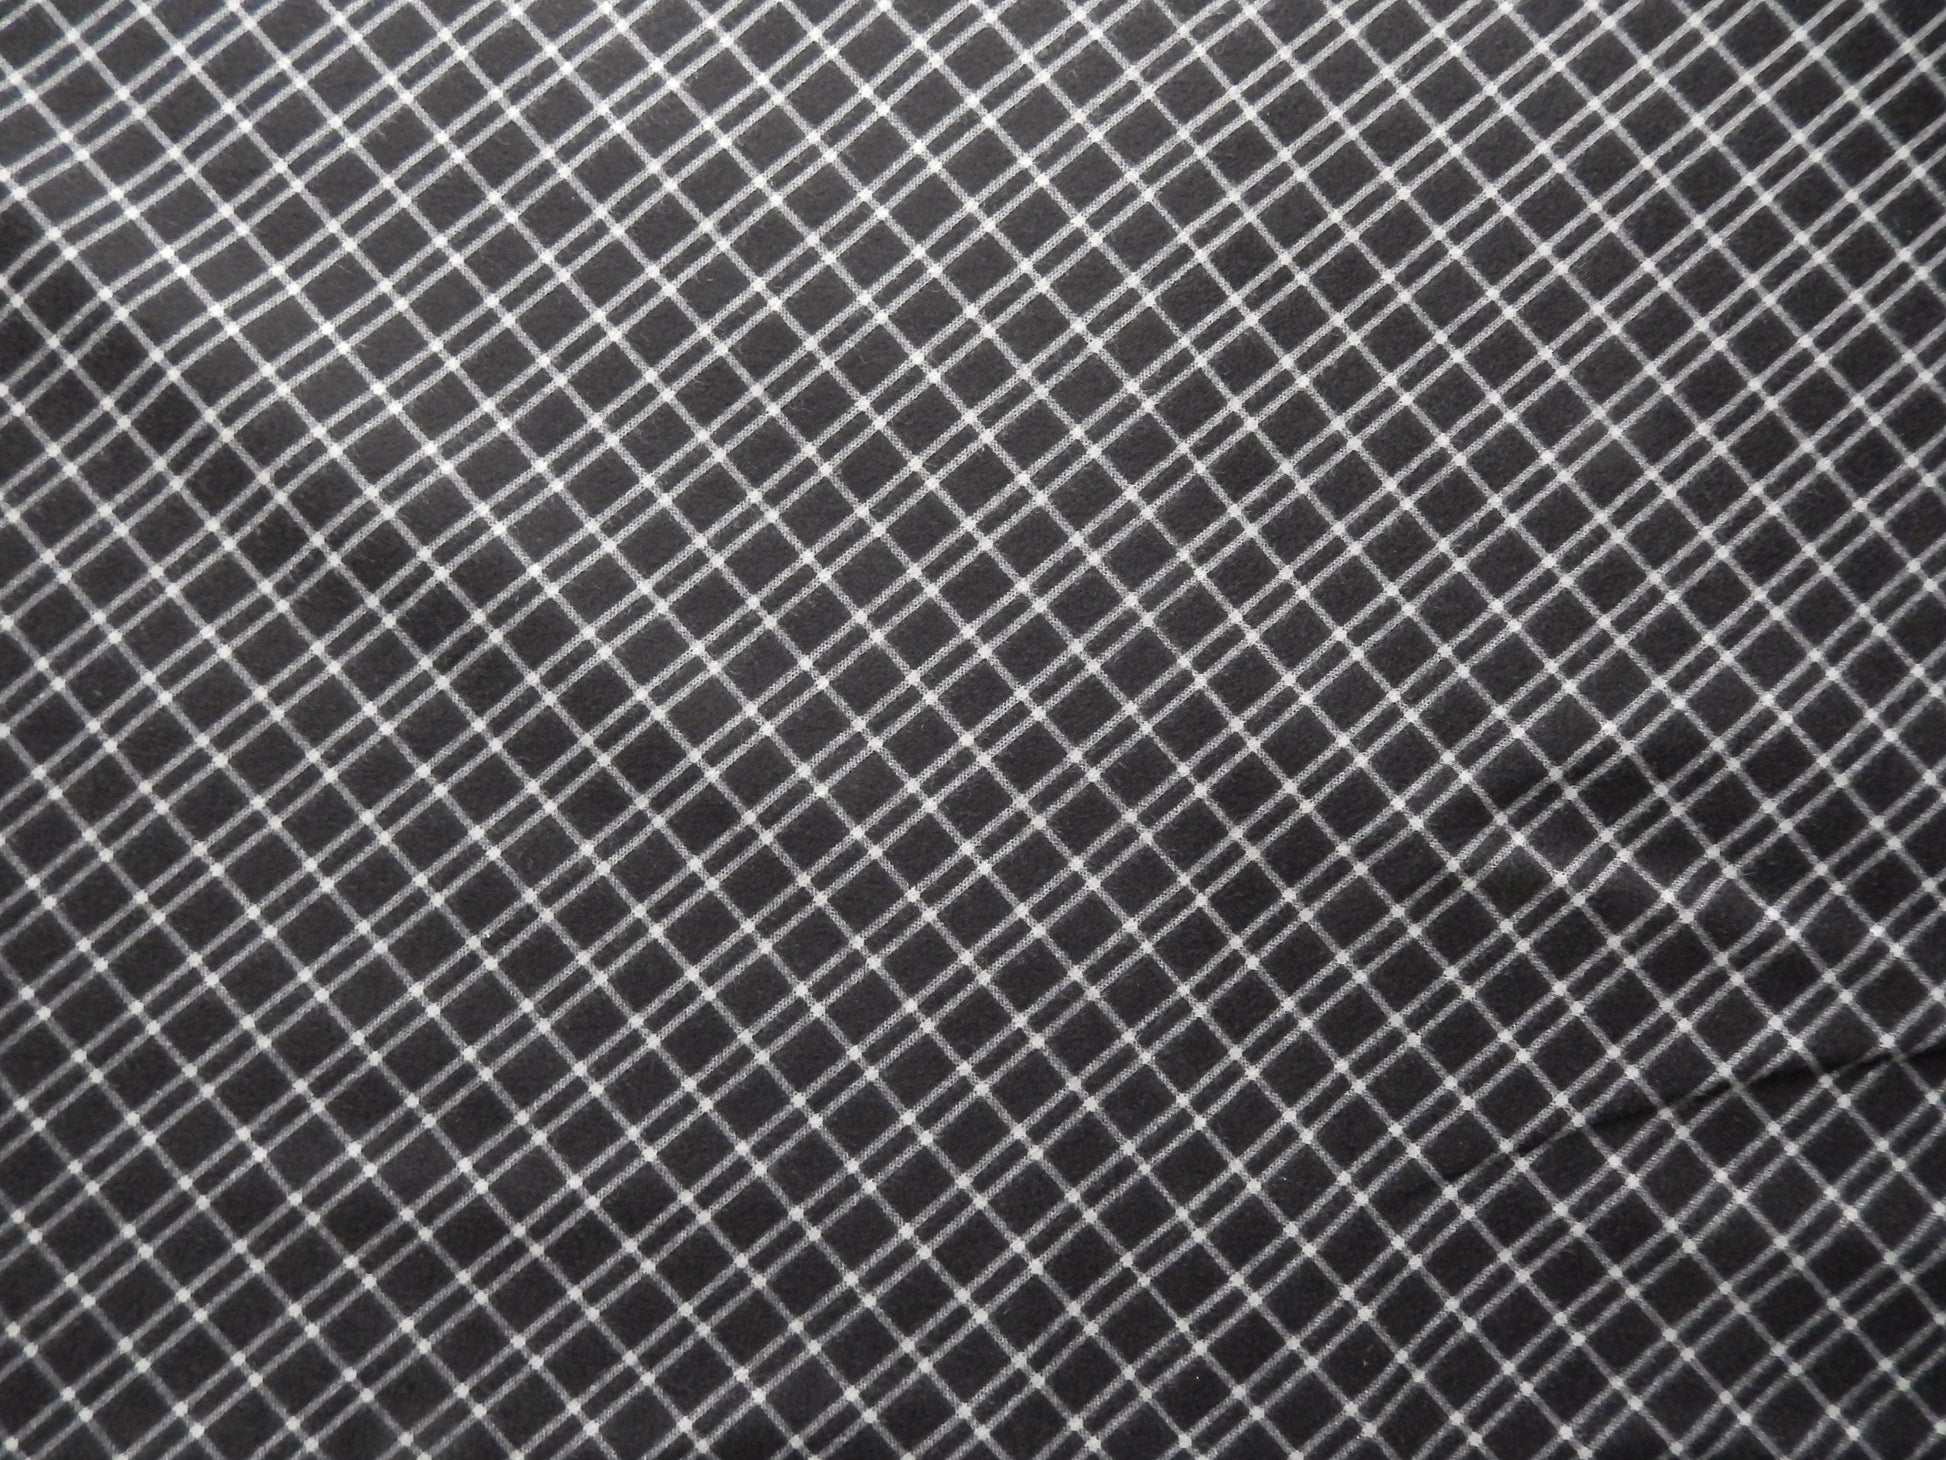 moda black and white check flannel fabric